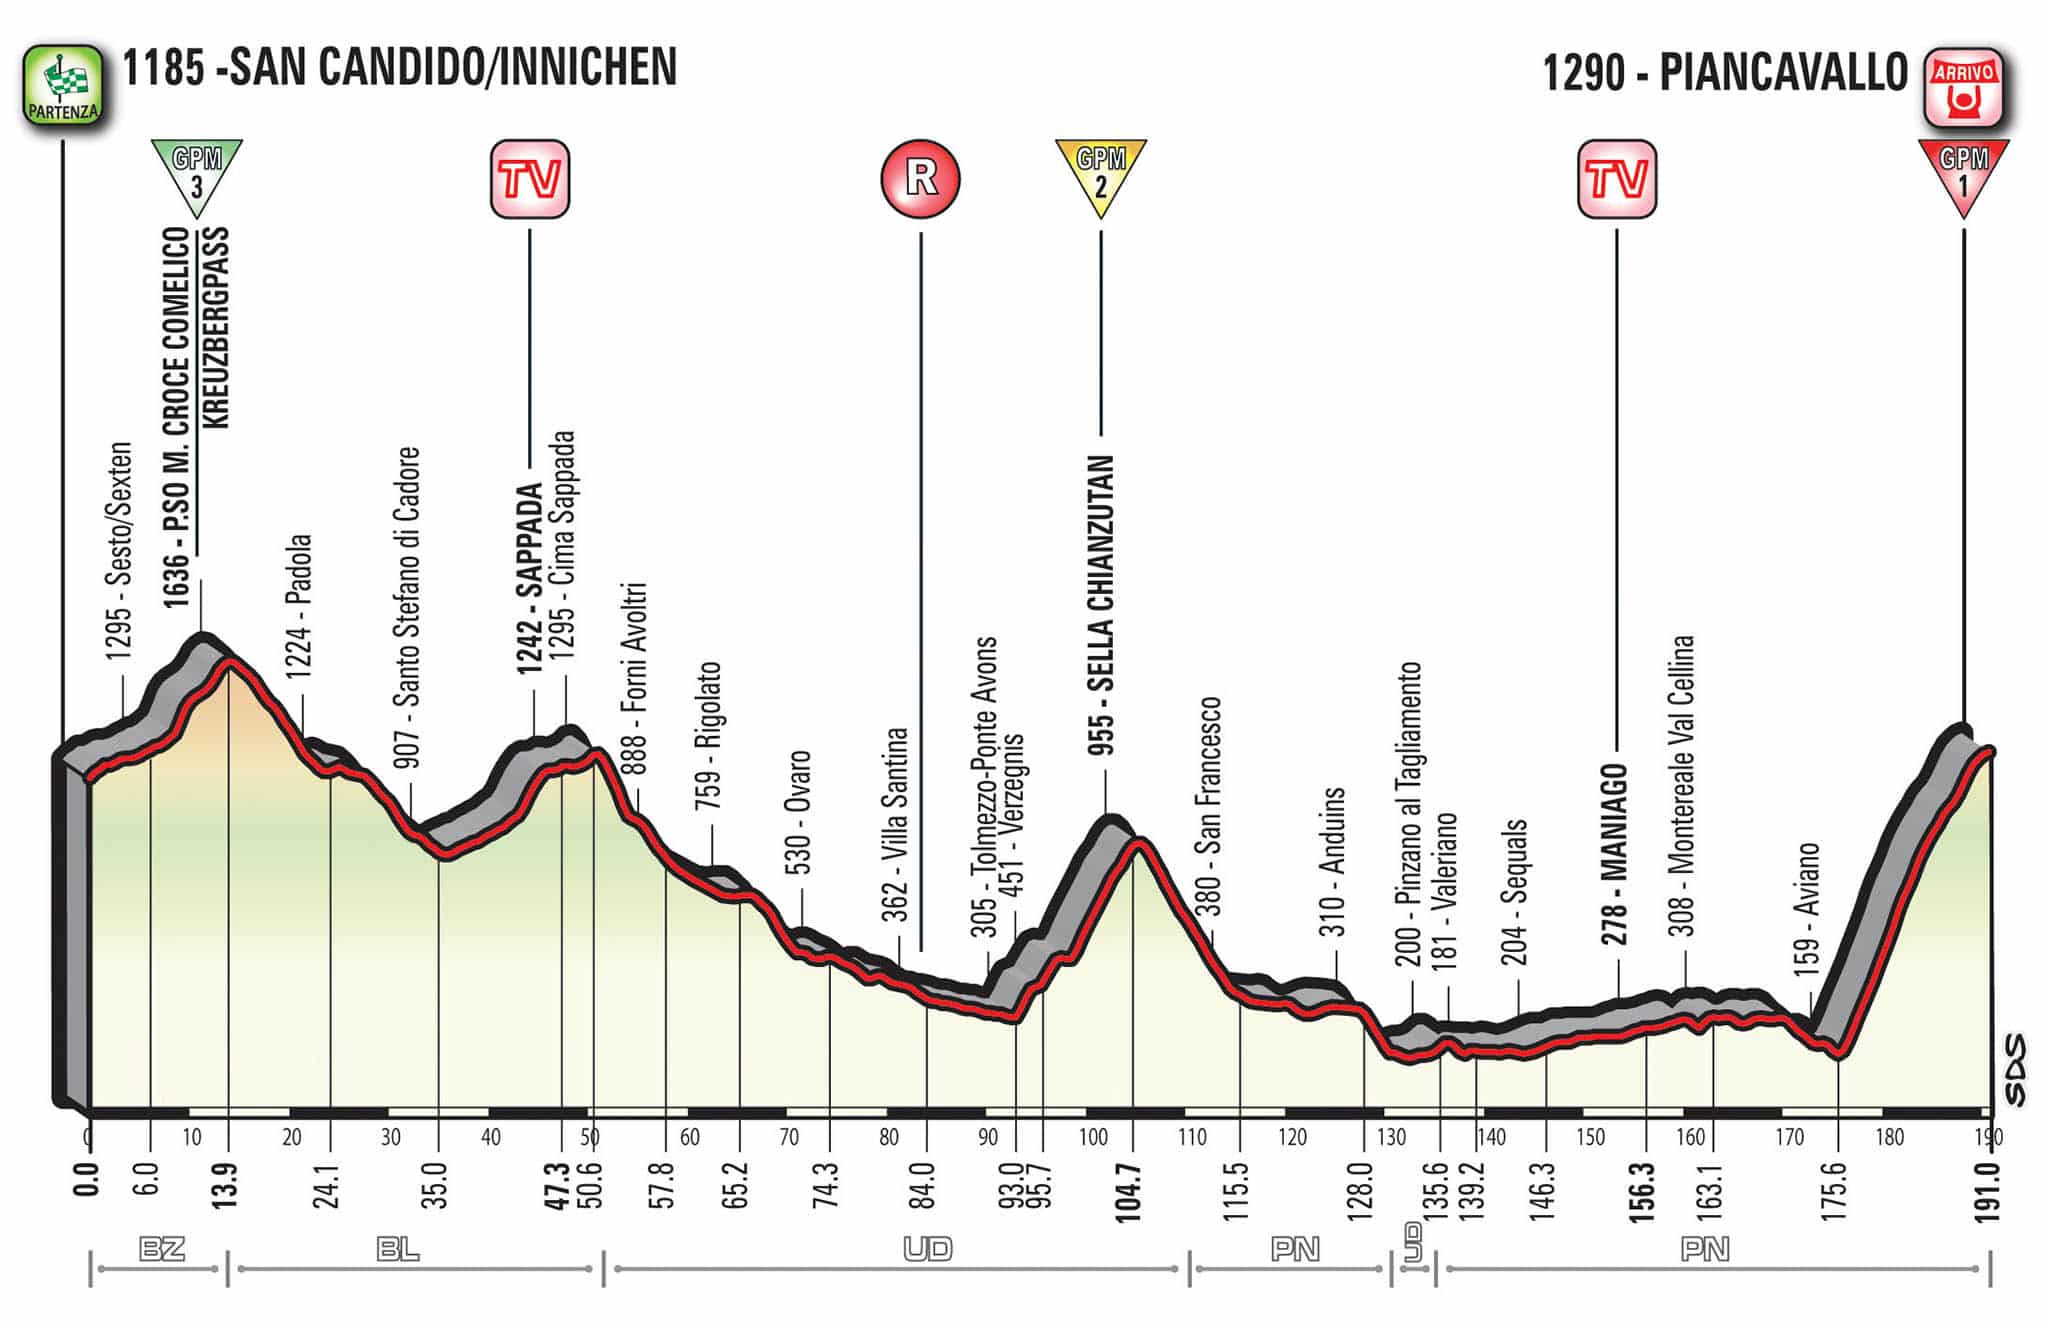 Giro d'Italia 2017, diciannovesima tappa San Candido-Innichen ... - Sportface.it